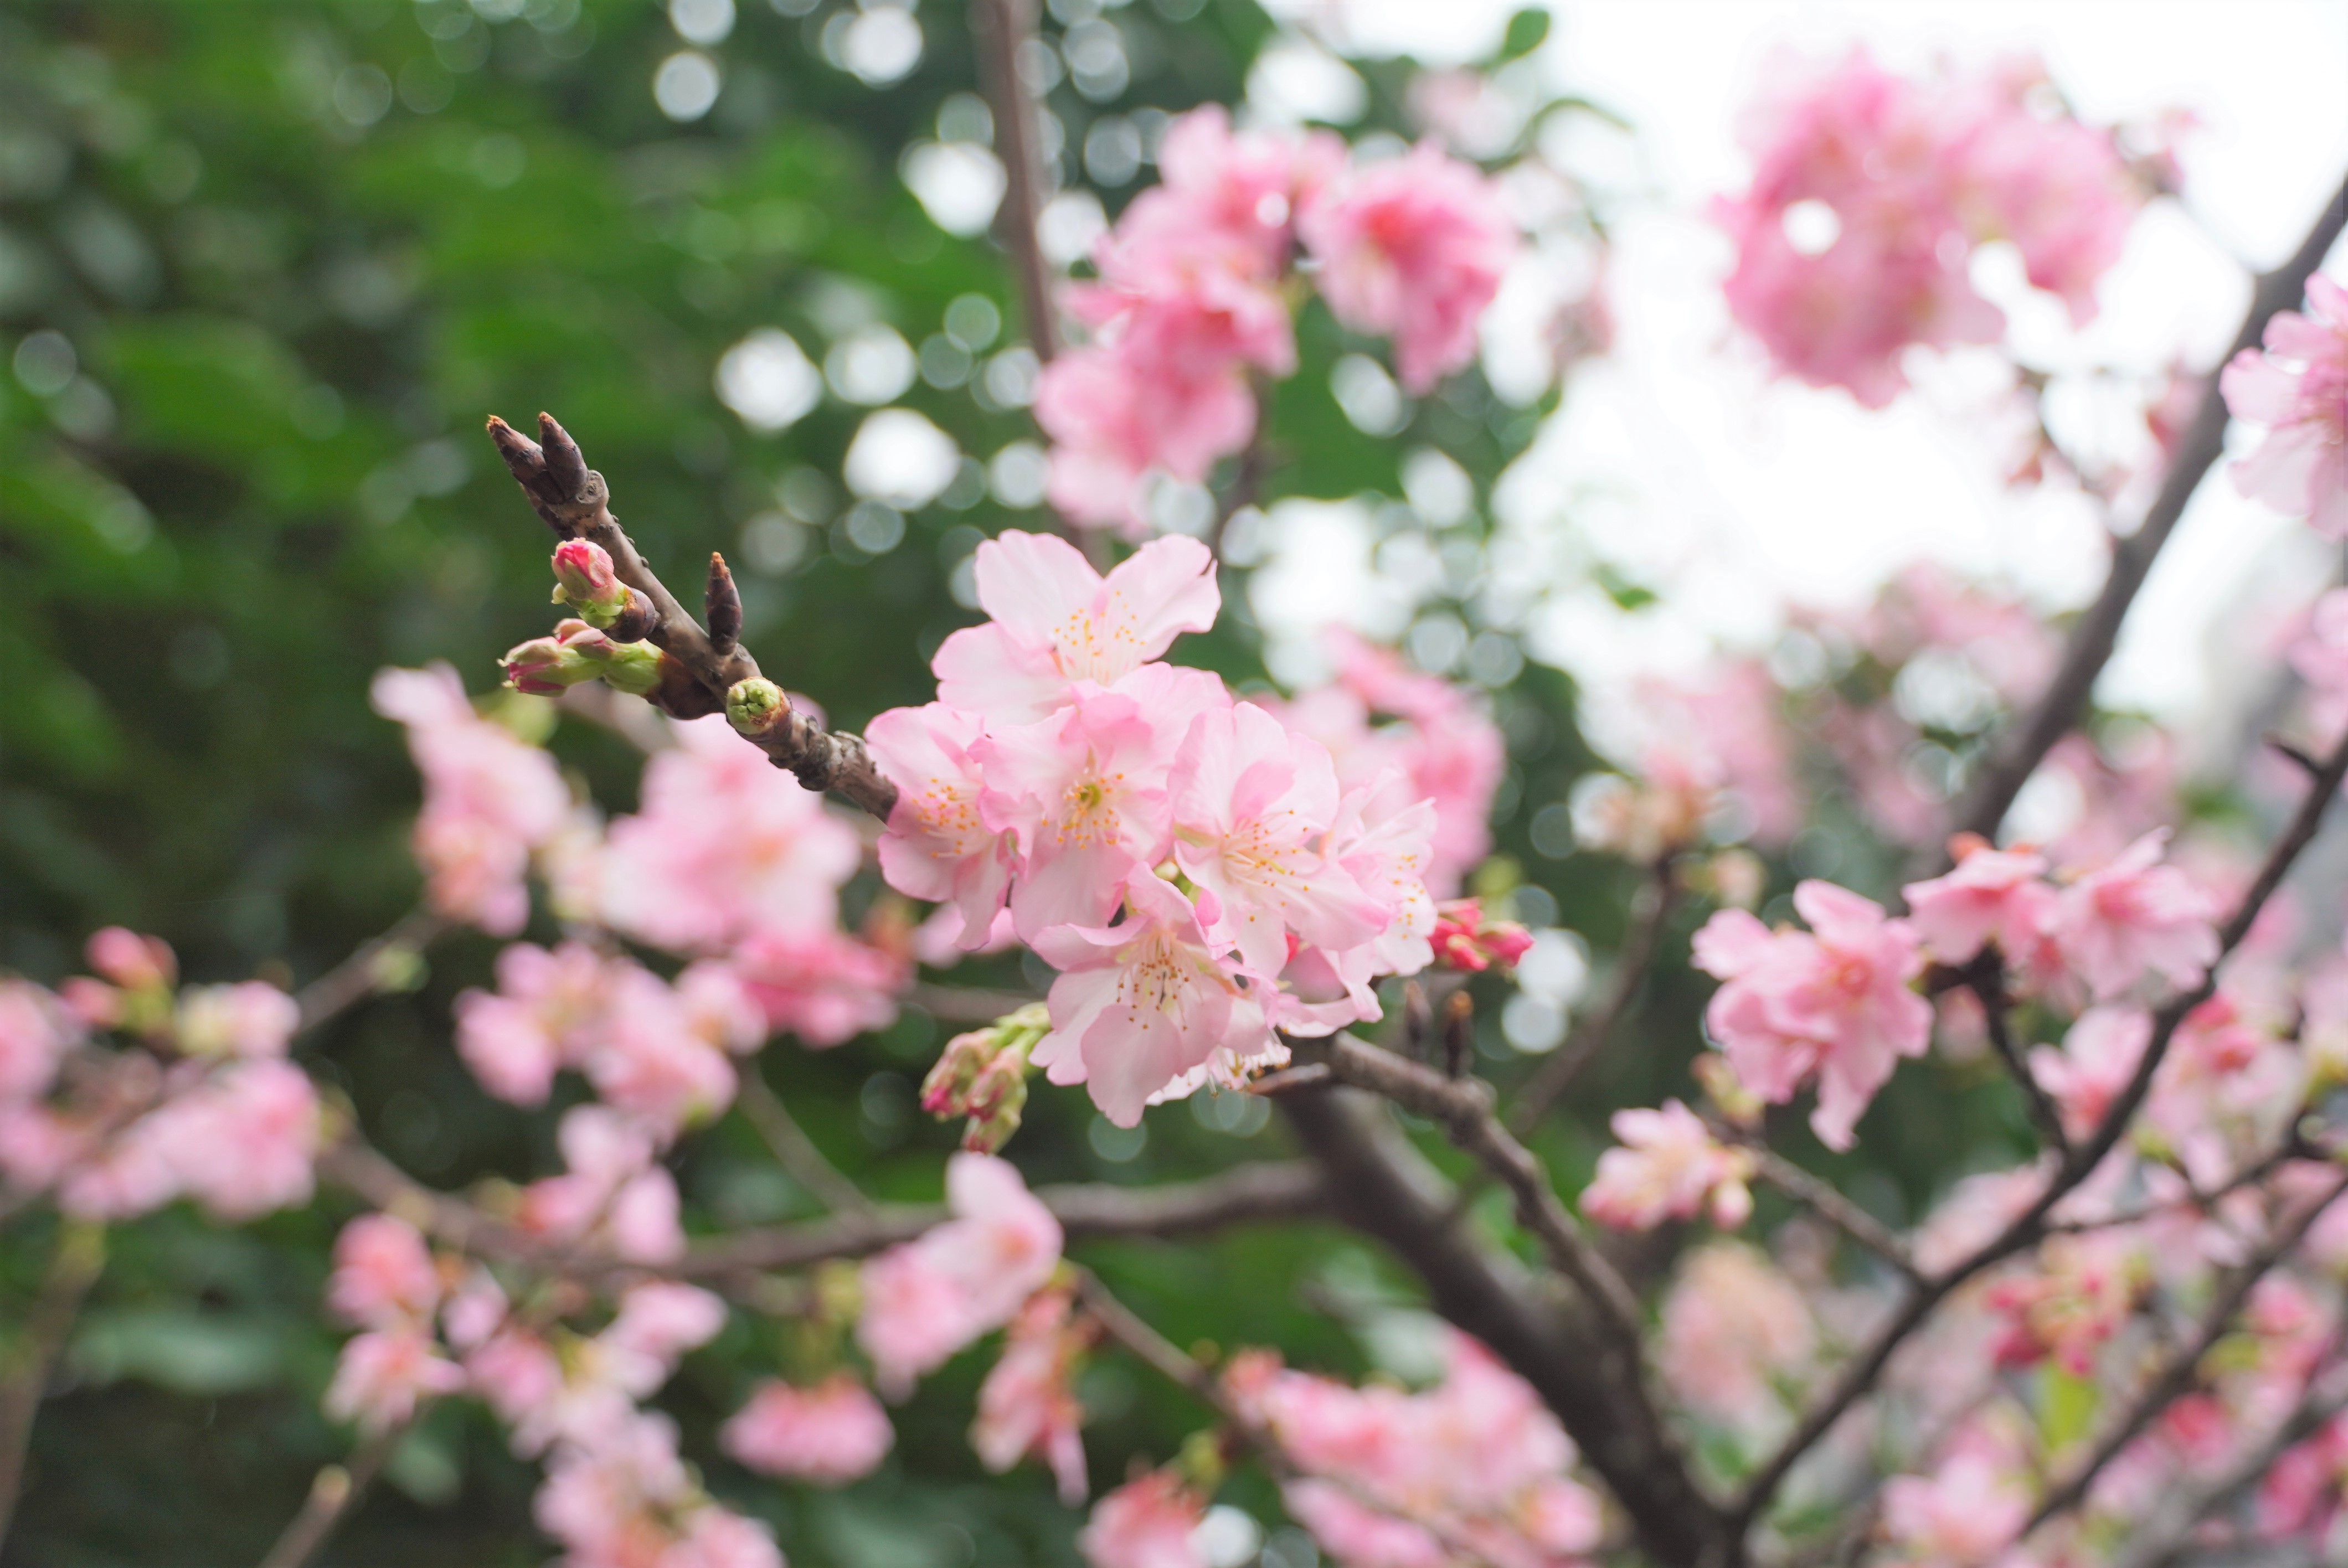 位於八里忠孝路上的大崁國小，從校園圍牆外就可以看到滿滿粉嫩櫻花